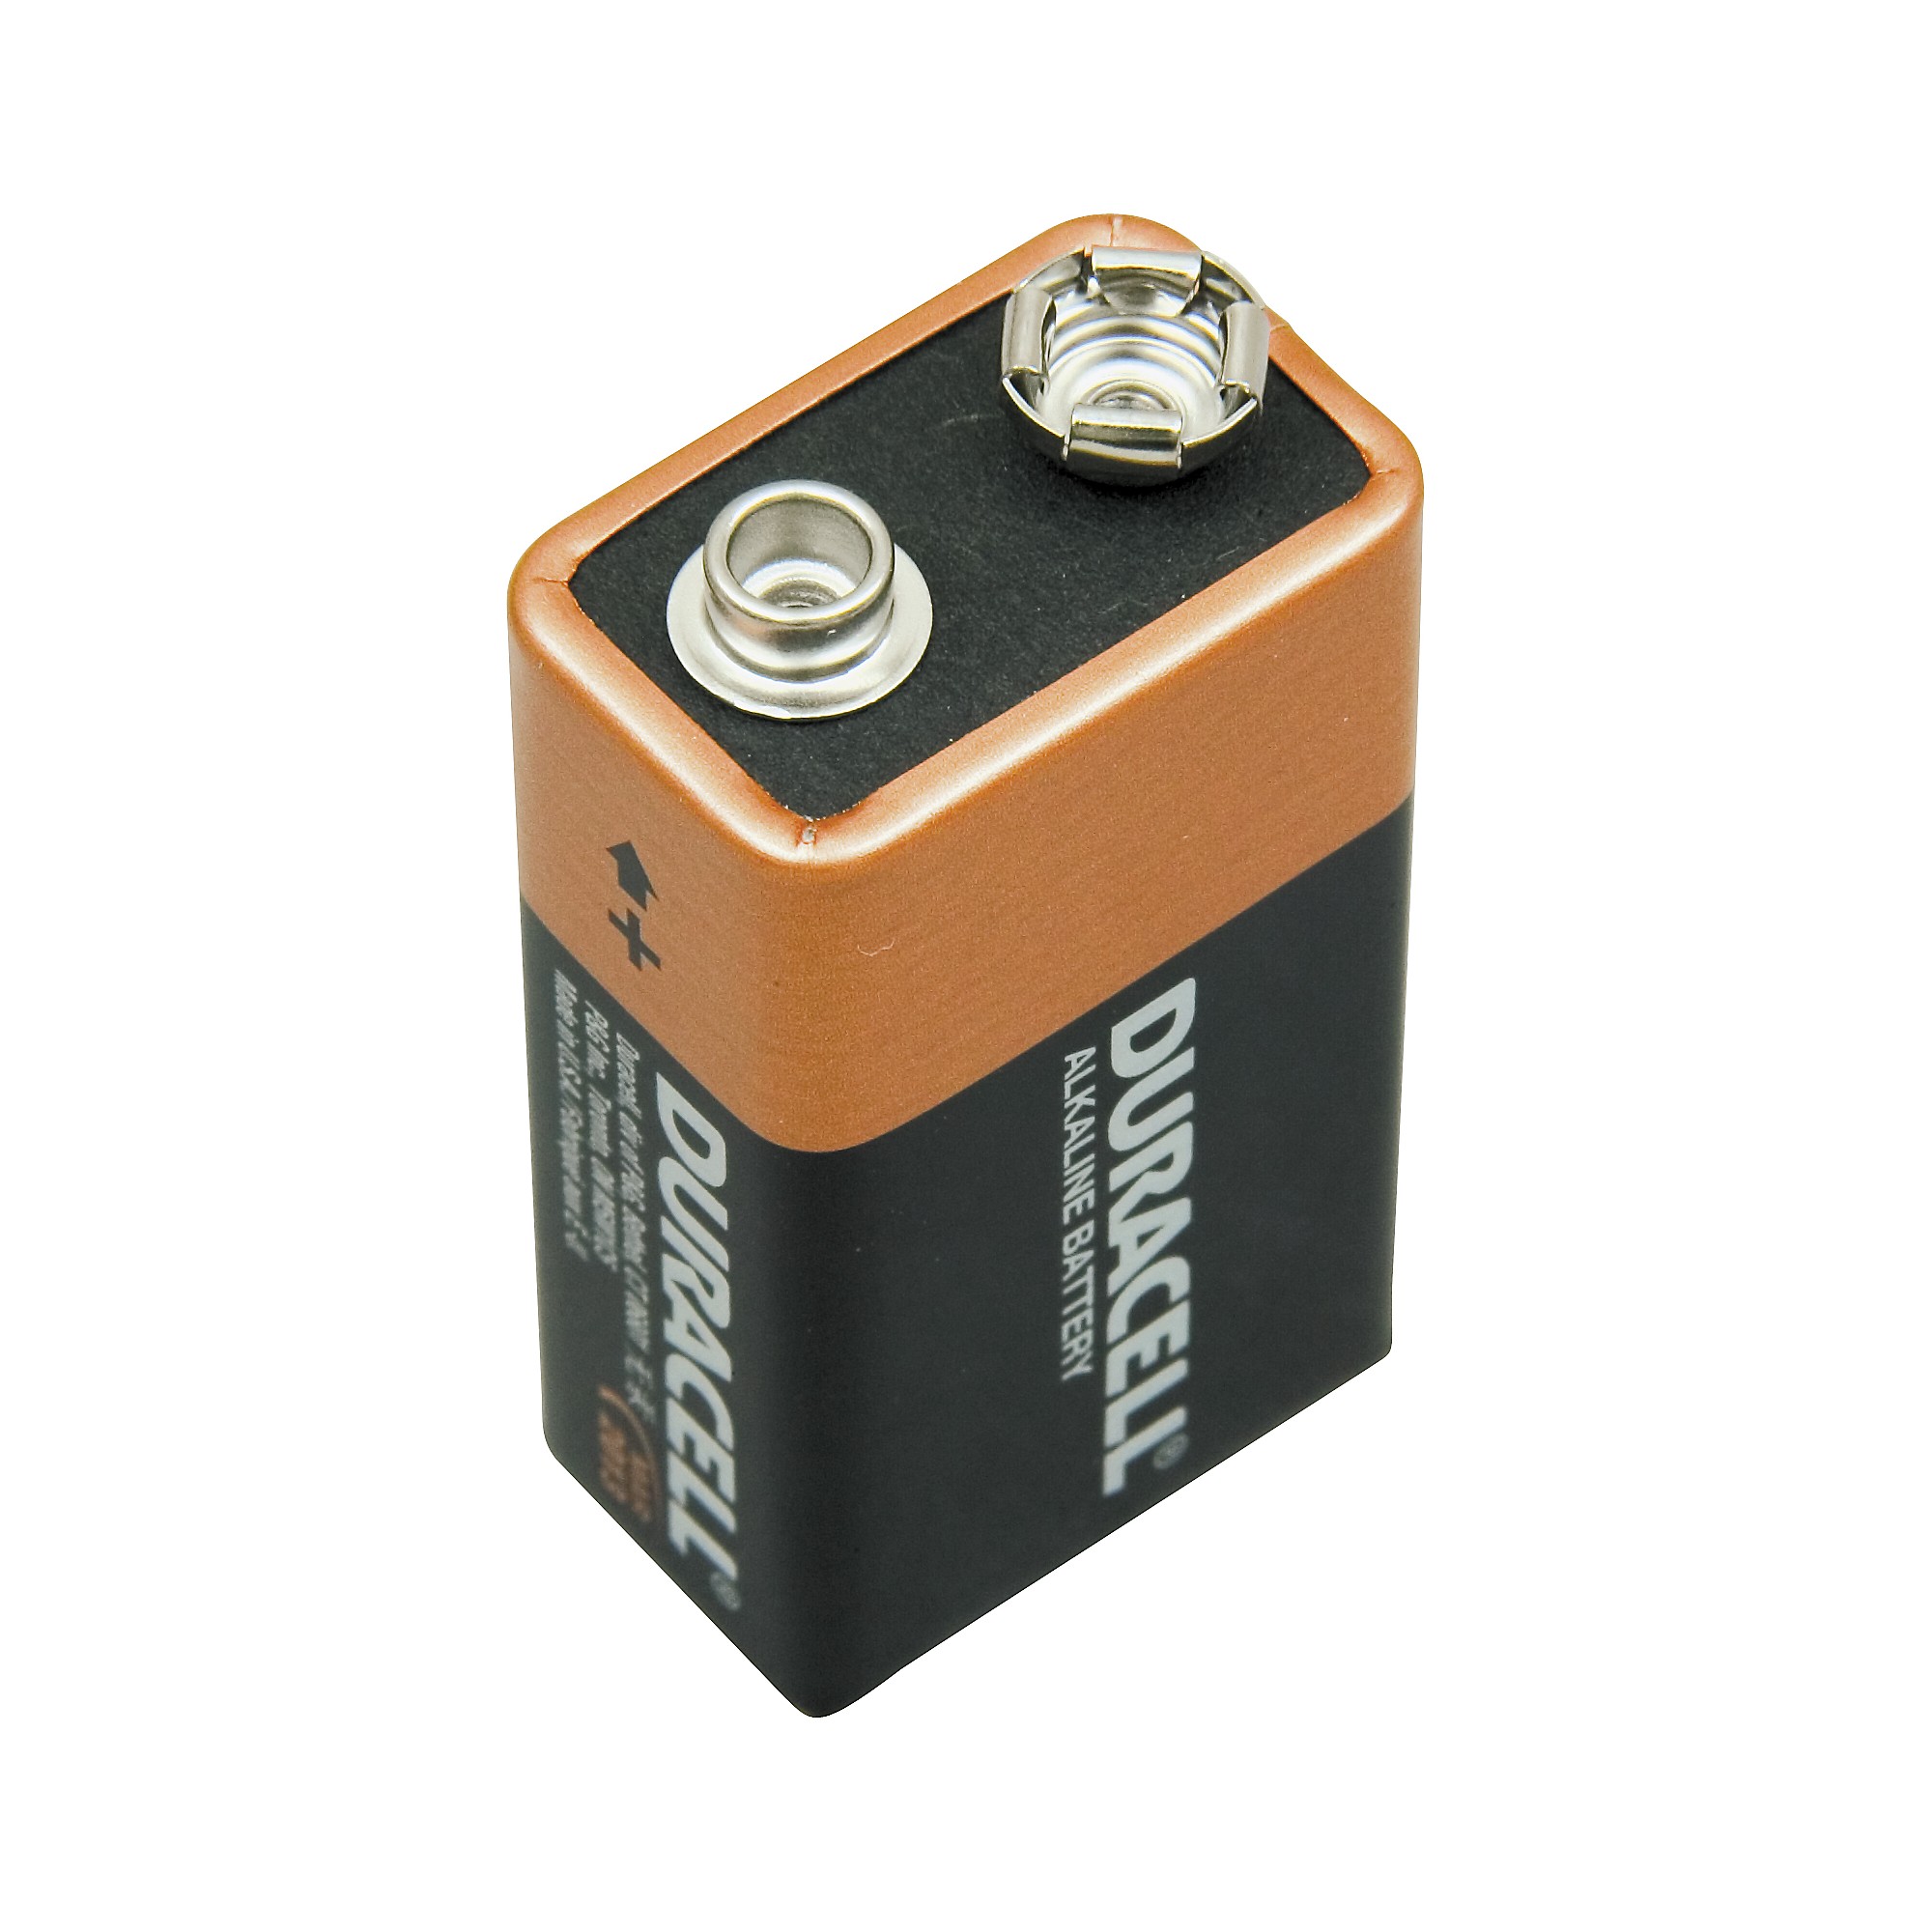 Duracell 9-Volt Batteries - 2 pack